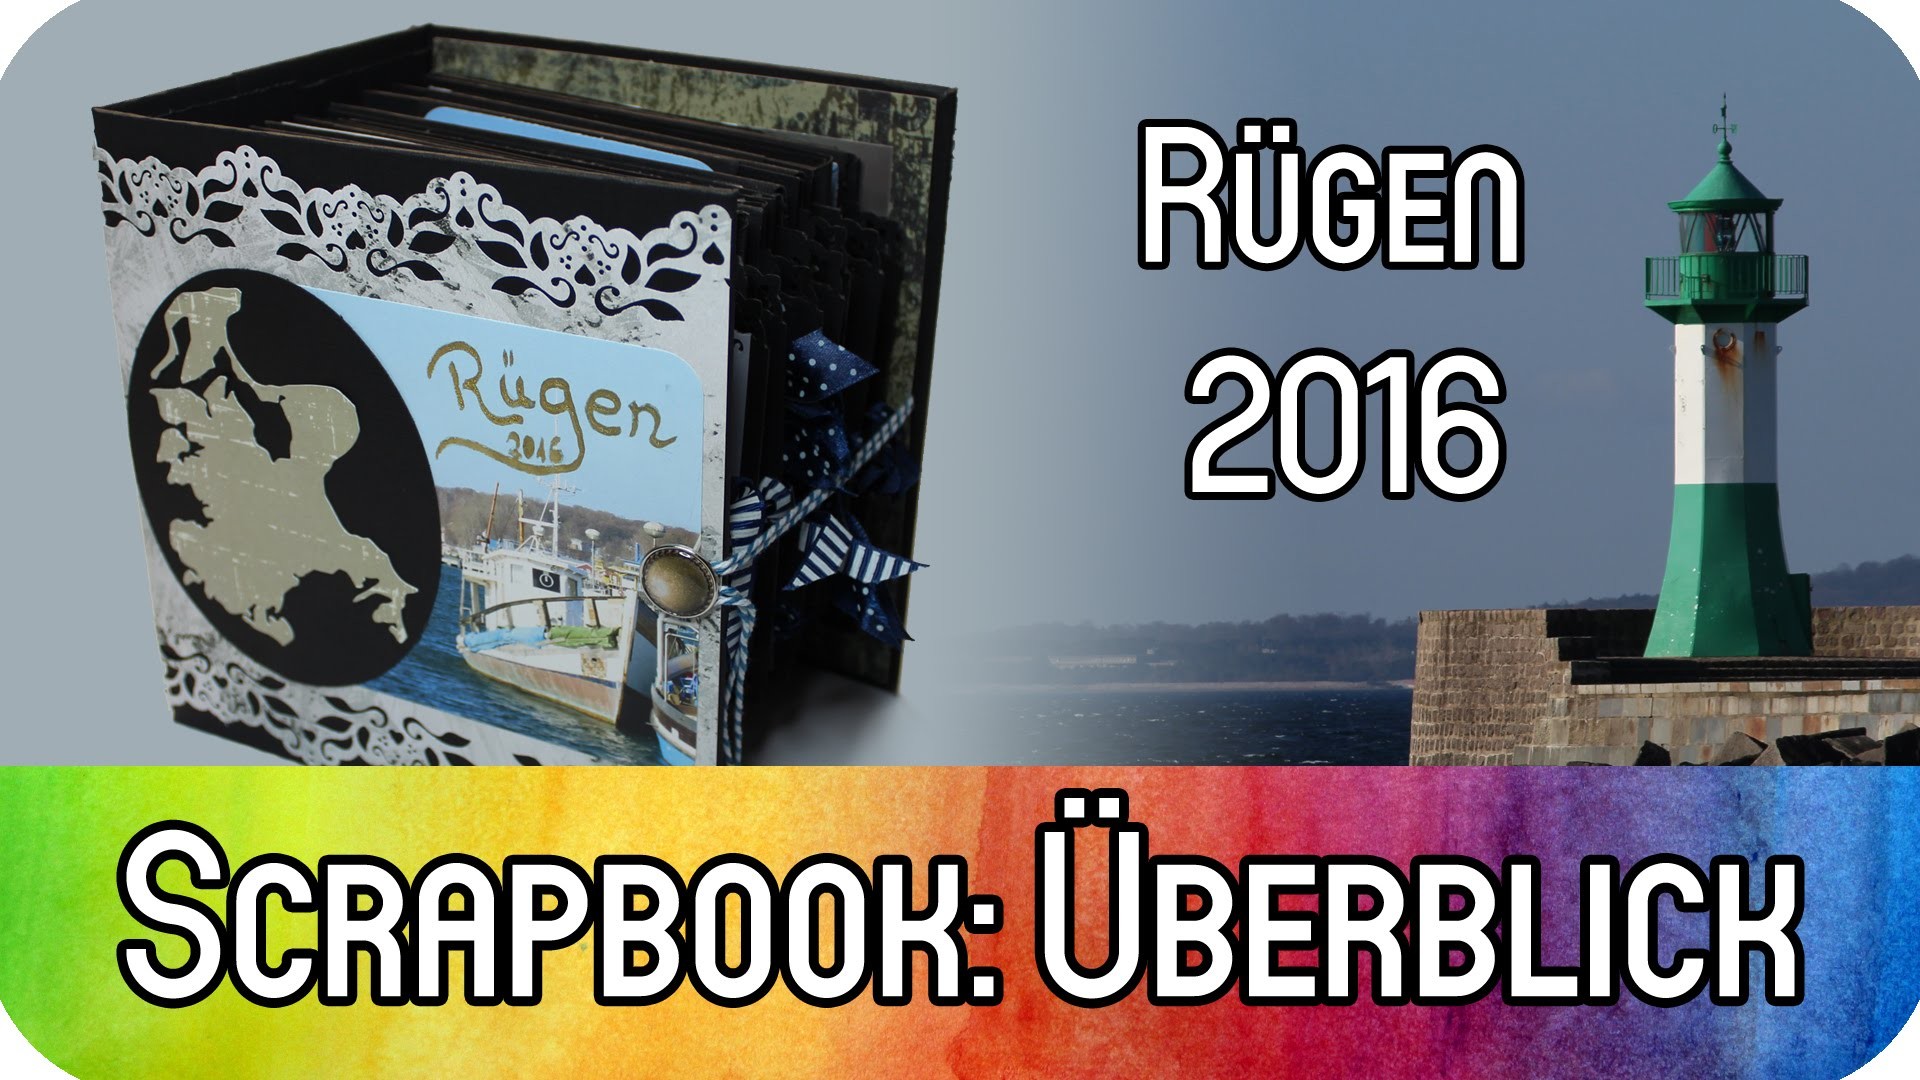 [Scrapbook Reihe] Album: Urlaub auf Rügen 2016 - #GRENZGENIALER Überblick | kreativBUNT